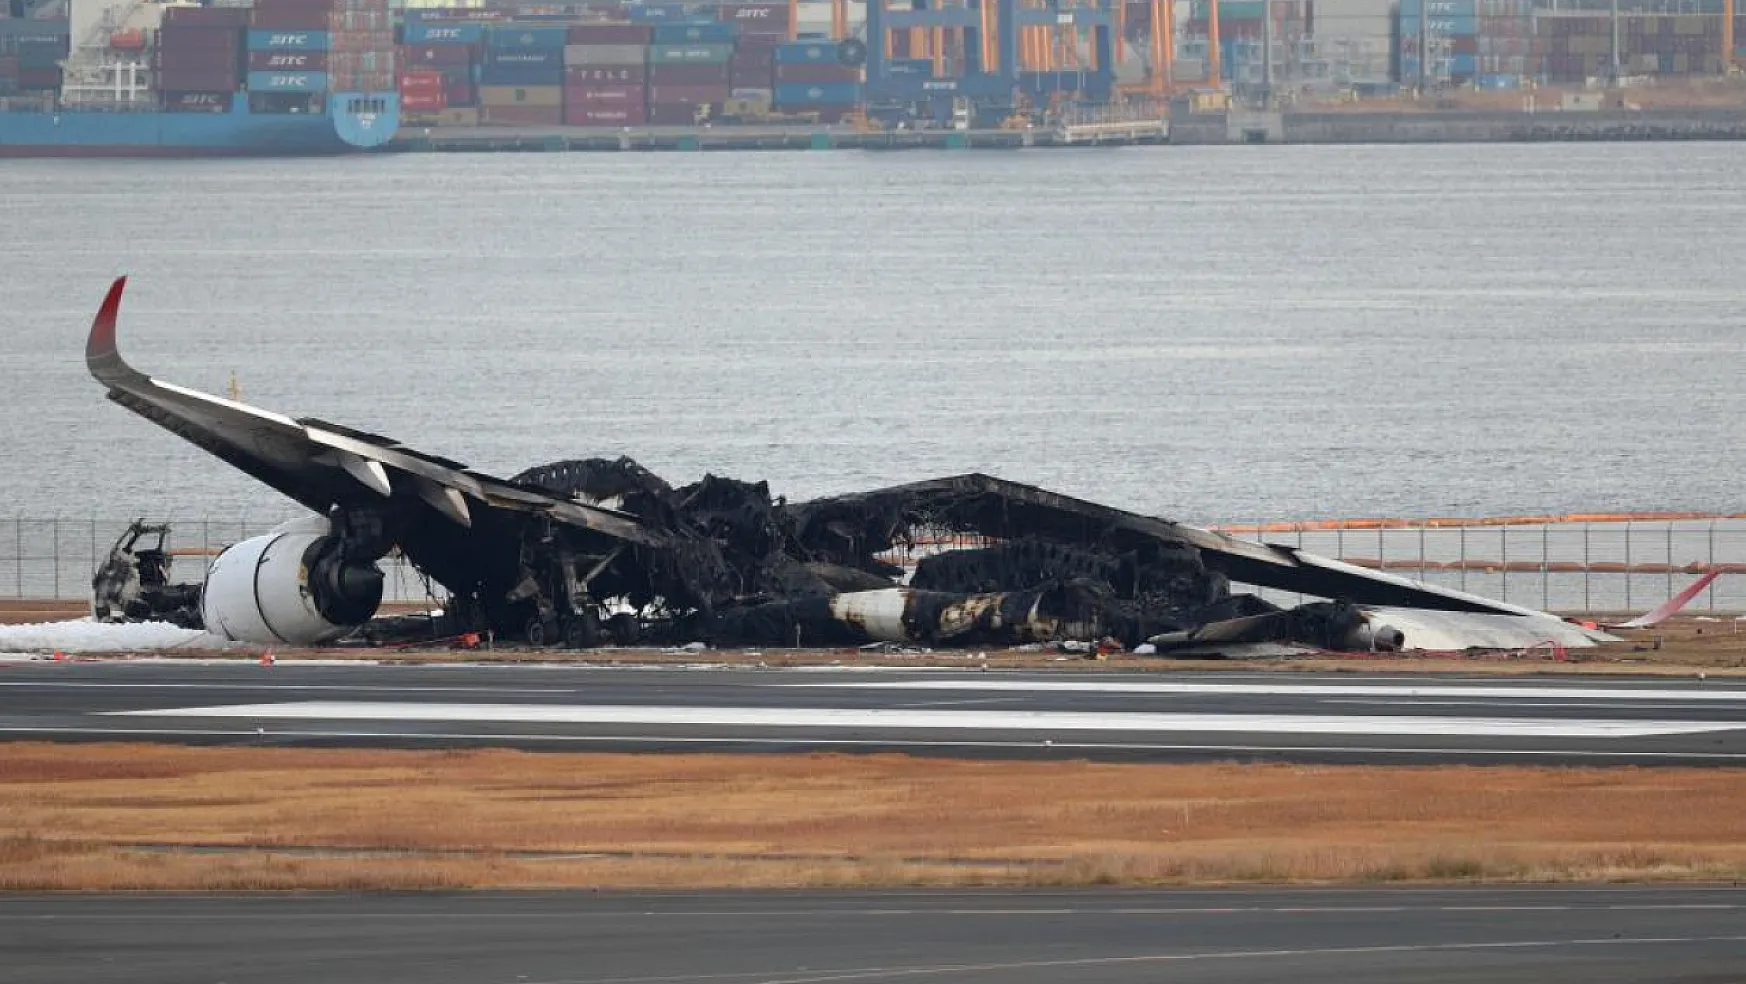 Uçak kazasında profesyonel müdahale sayesinde tahliye 18 dakikada tamamlandı